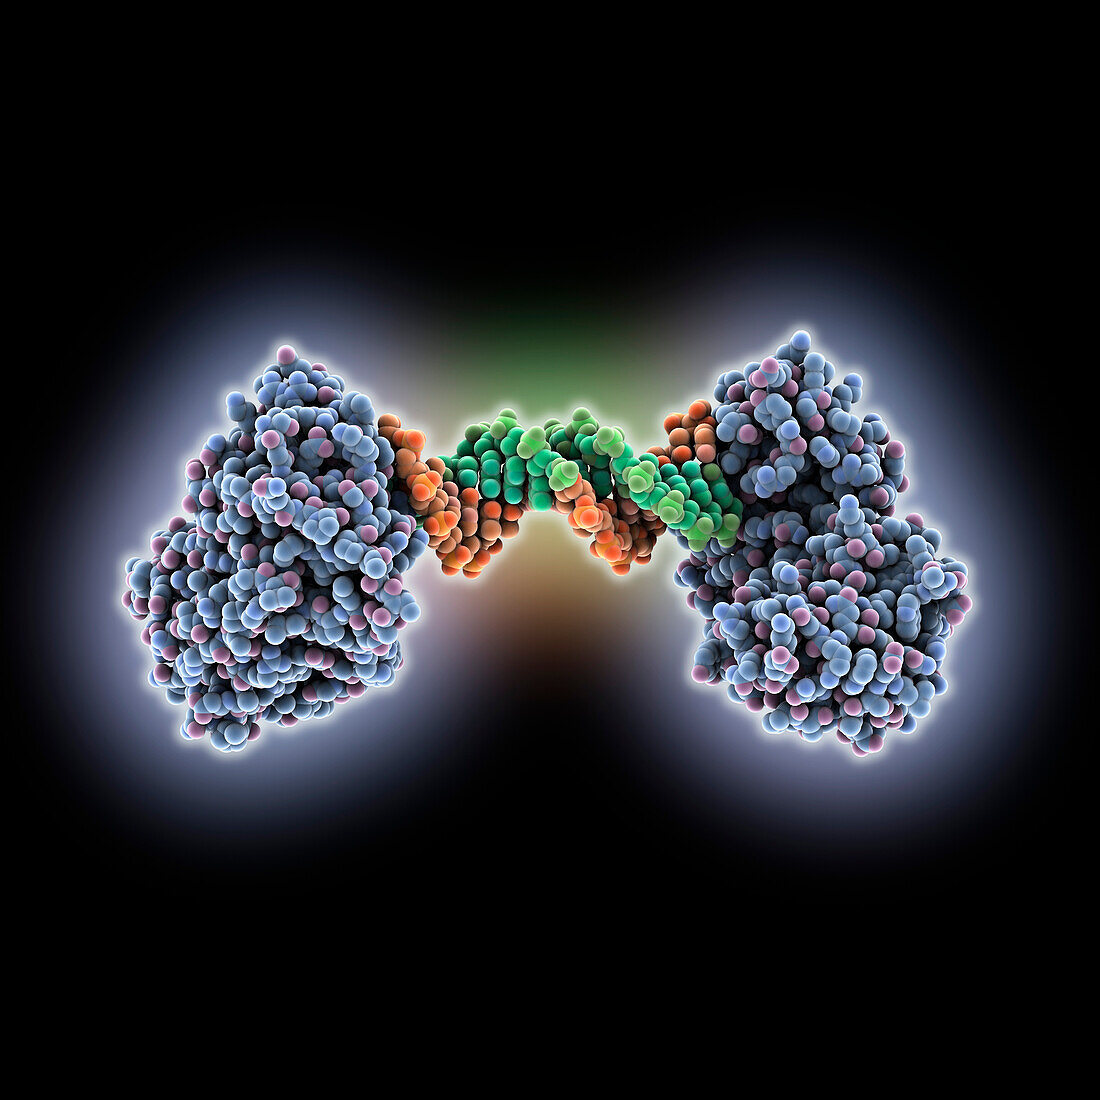 Reverse transcriptase complexed with DNA, molecular model